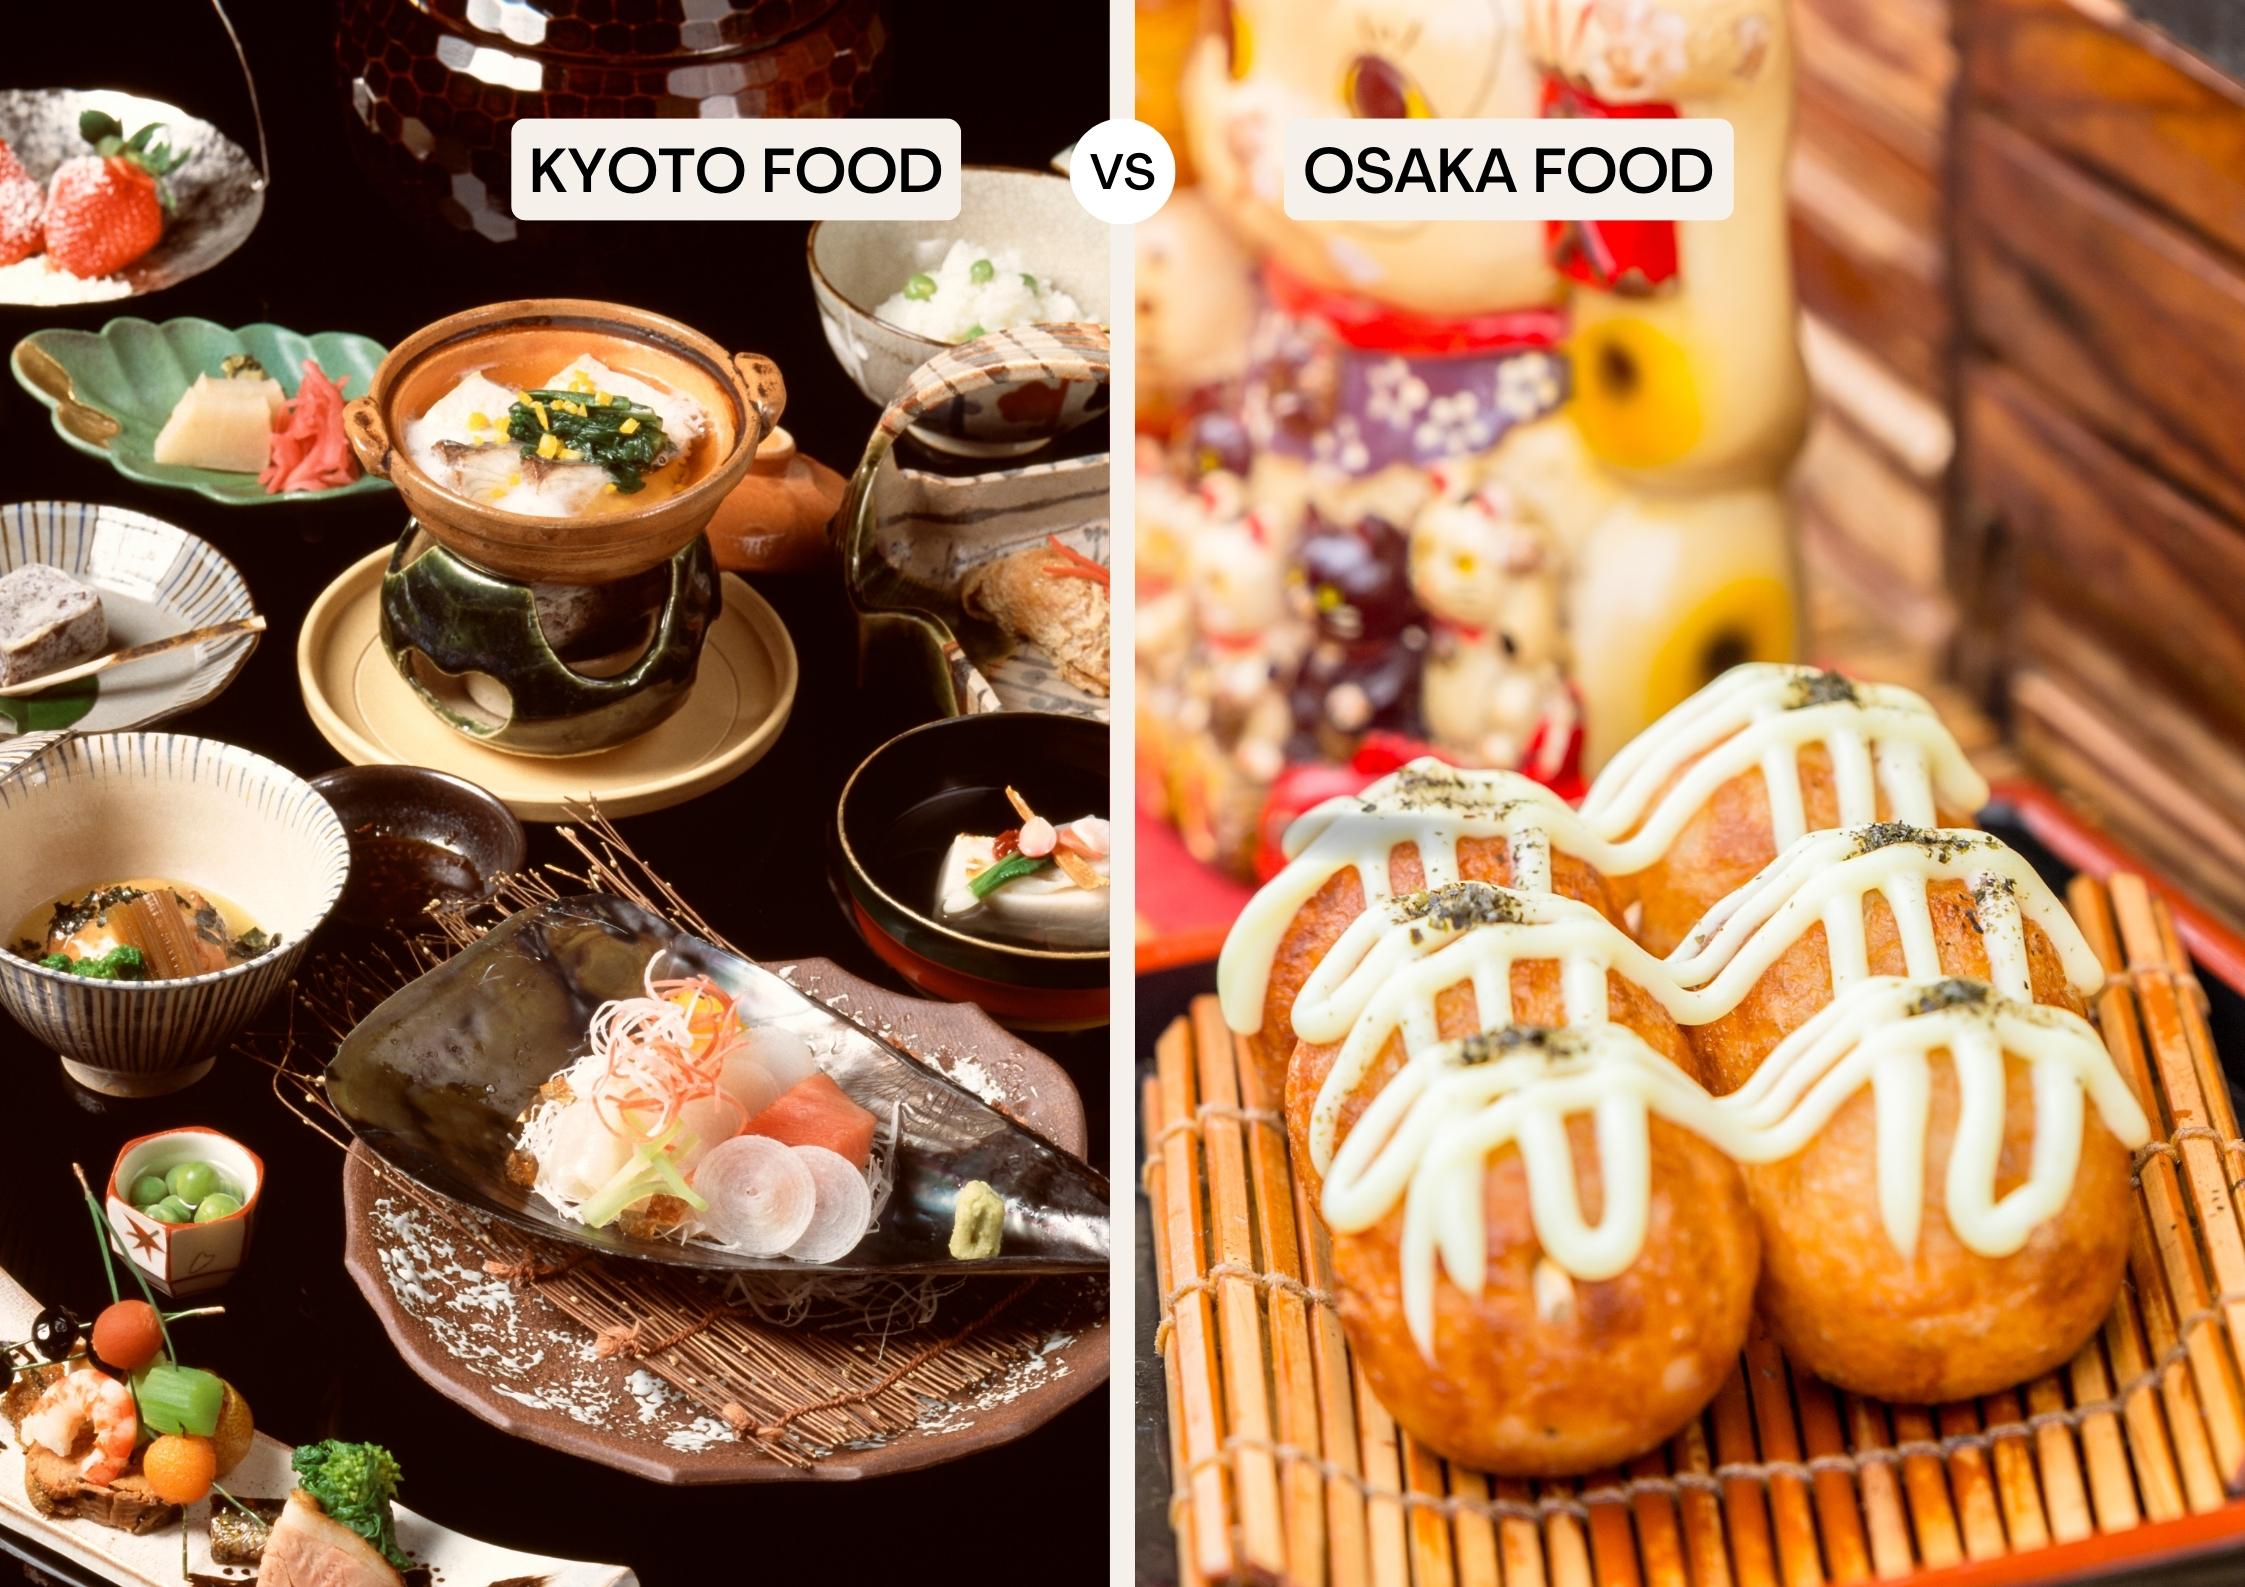 Kyoto food vs Osakan food